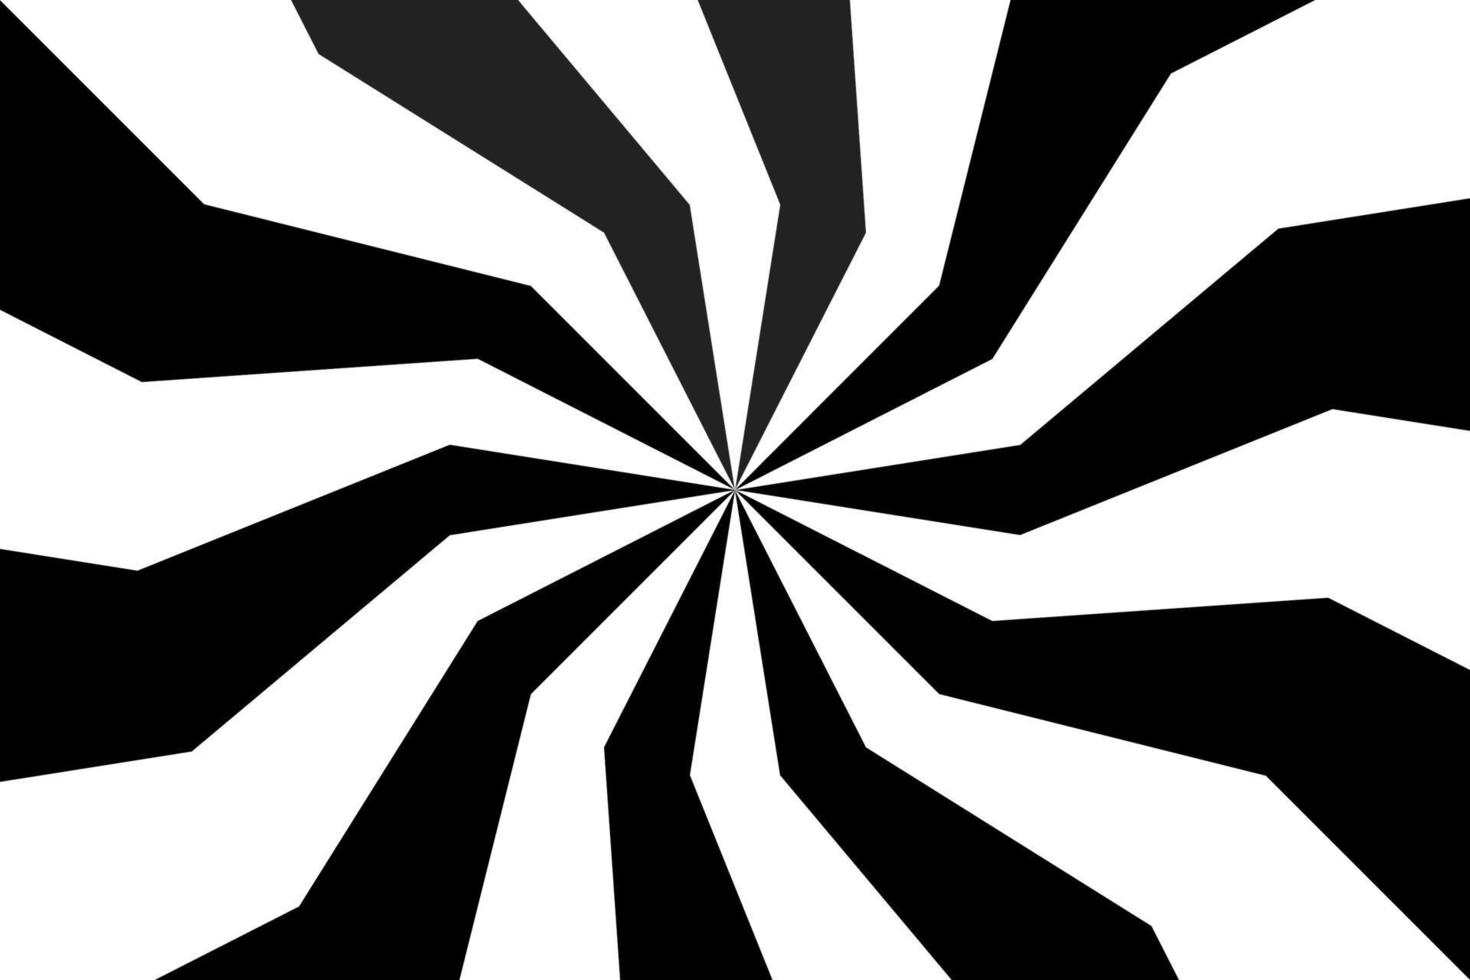 sfondo a spirale in bianco e nero, modello radiale vorticoso, illustrazione vettoriale astratta